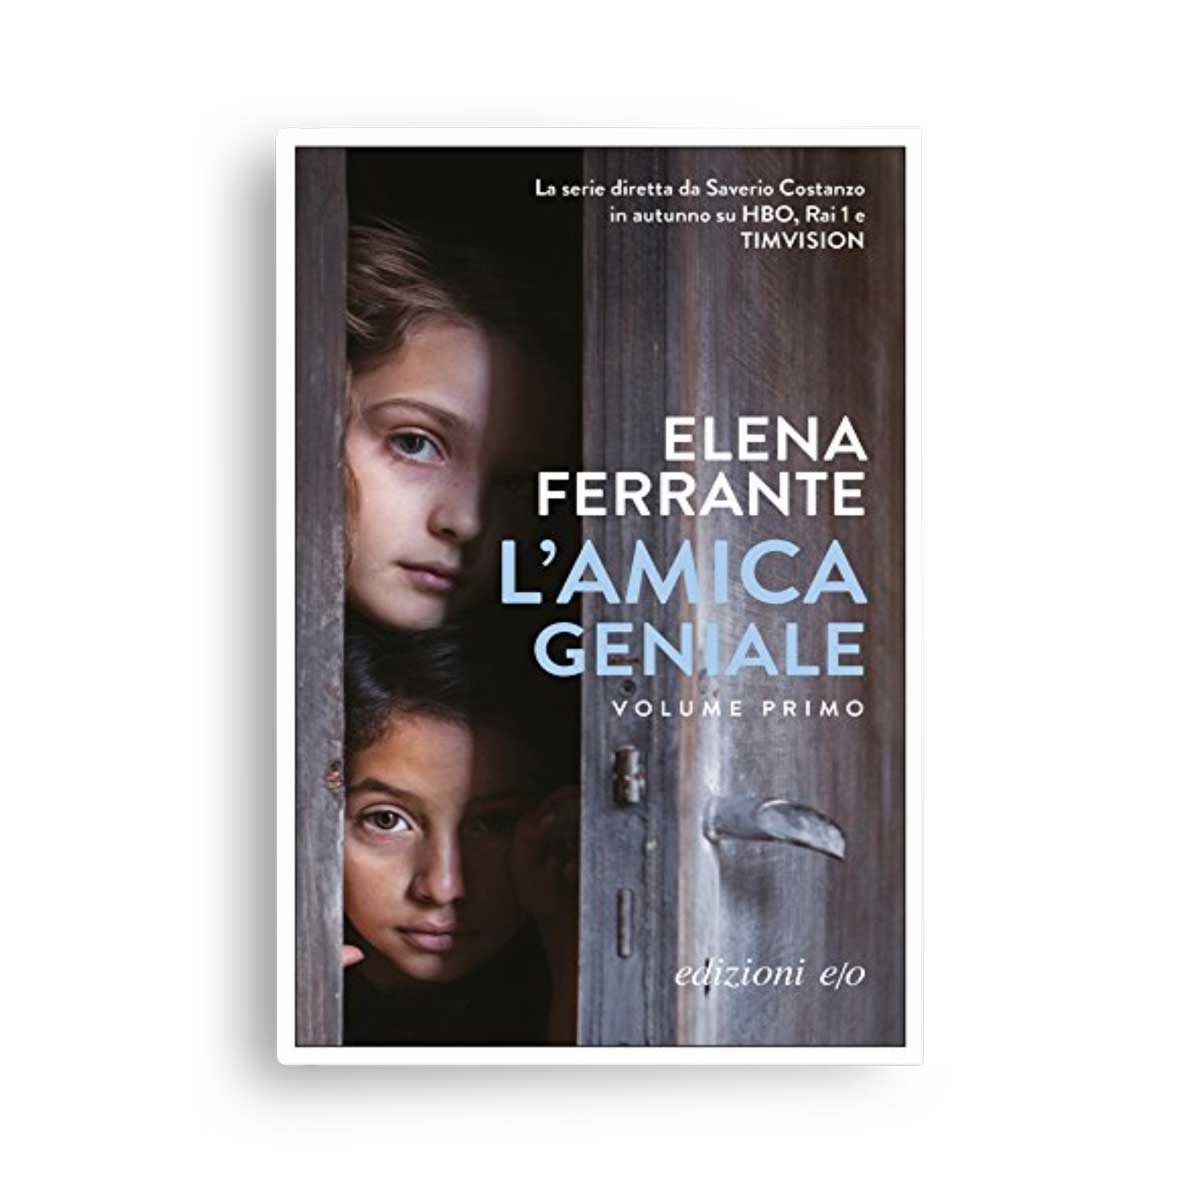 Elena Ferrante: L'amica geniale